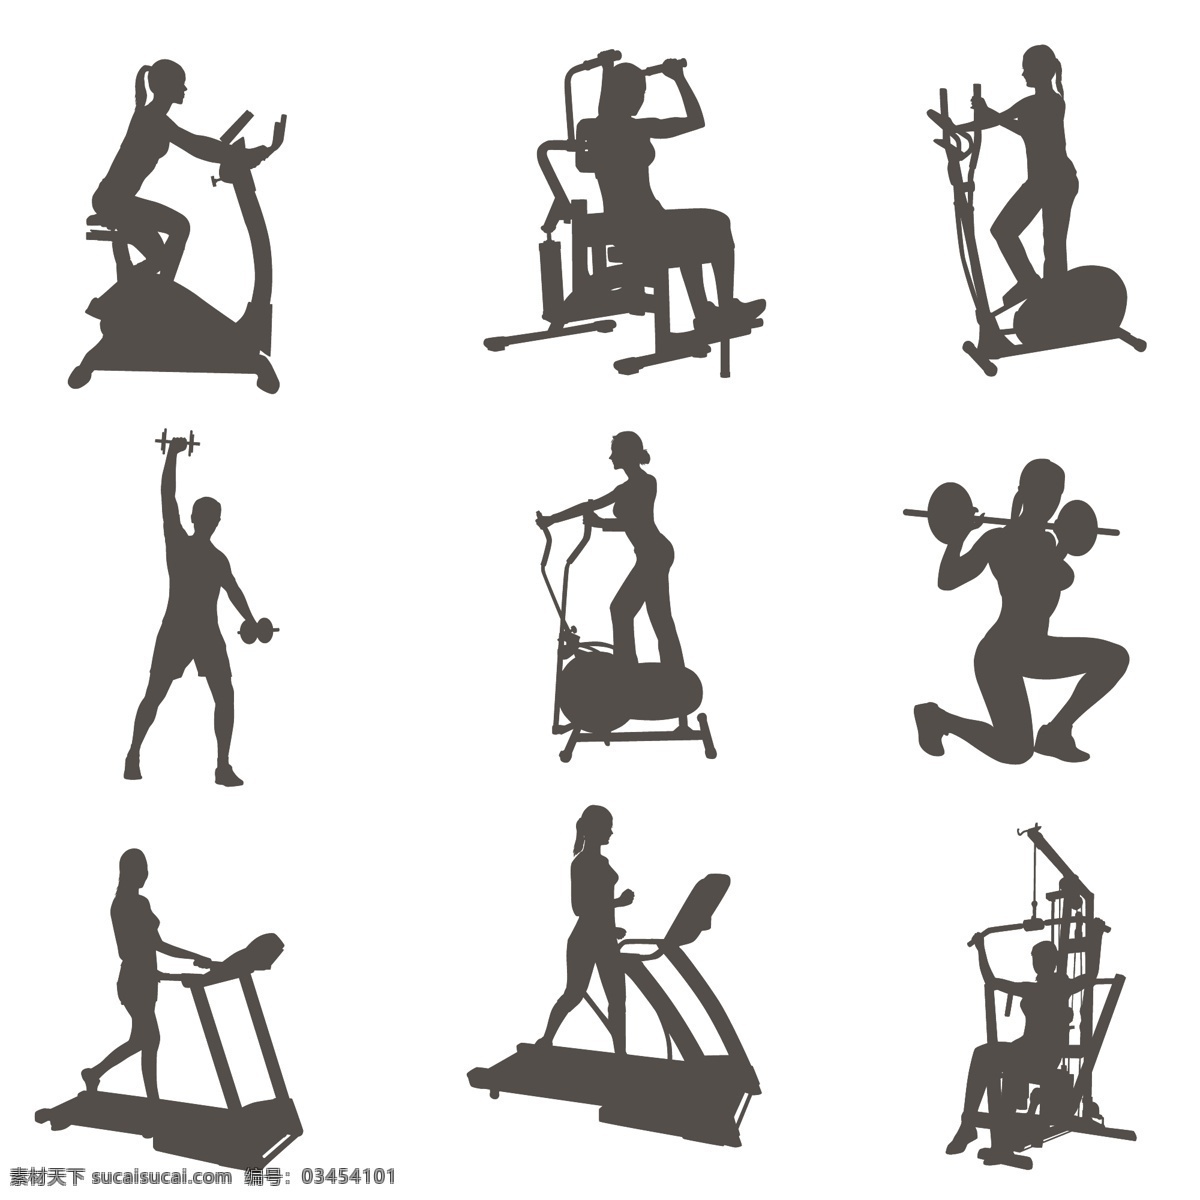 健身 剪影 矢量 素材图片 健身剪影矢量 健身剪影素材 健身矢量素材 健身矢量 健身素材 健身运动 运动 共享设计矢量 生活百科 体育用品